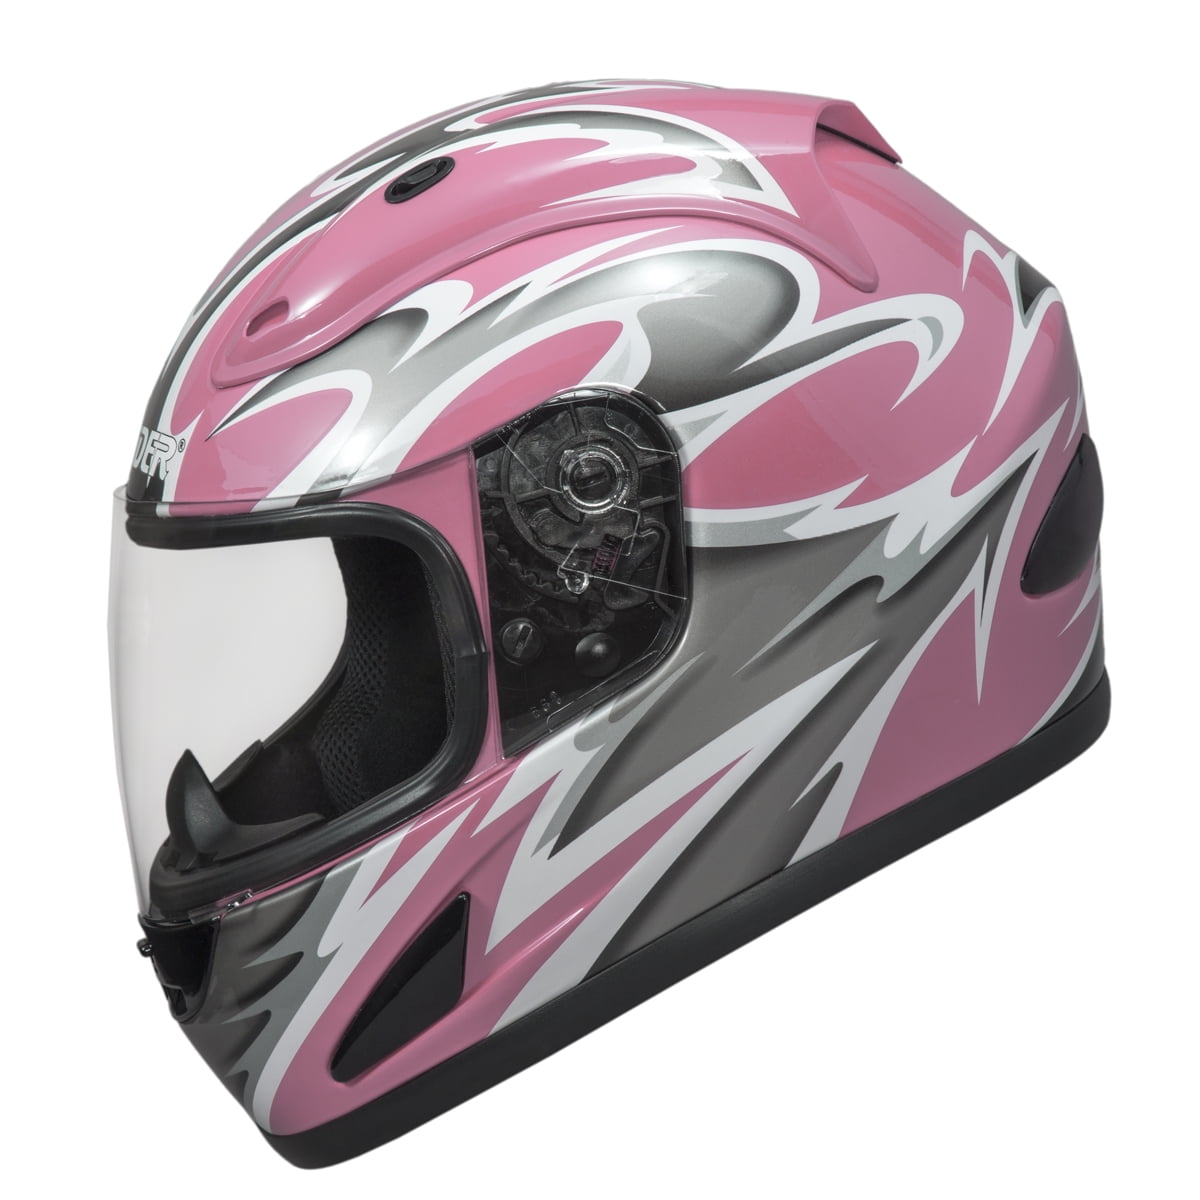 Raider Full Face Motorcycle Helmet Street Bike Helmet DOT Approved